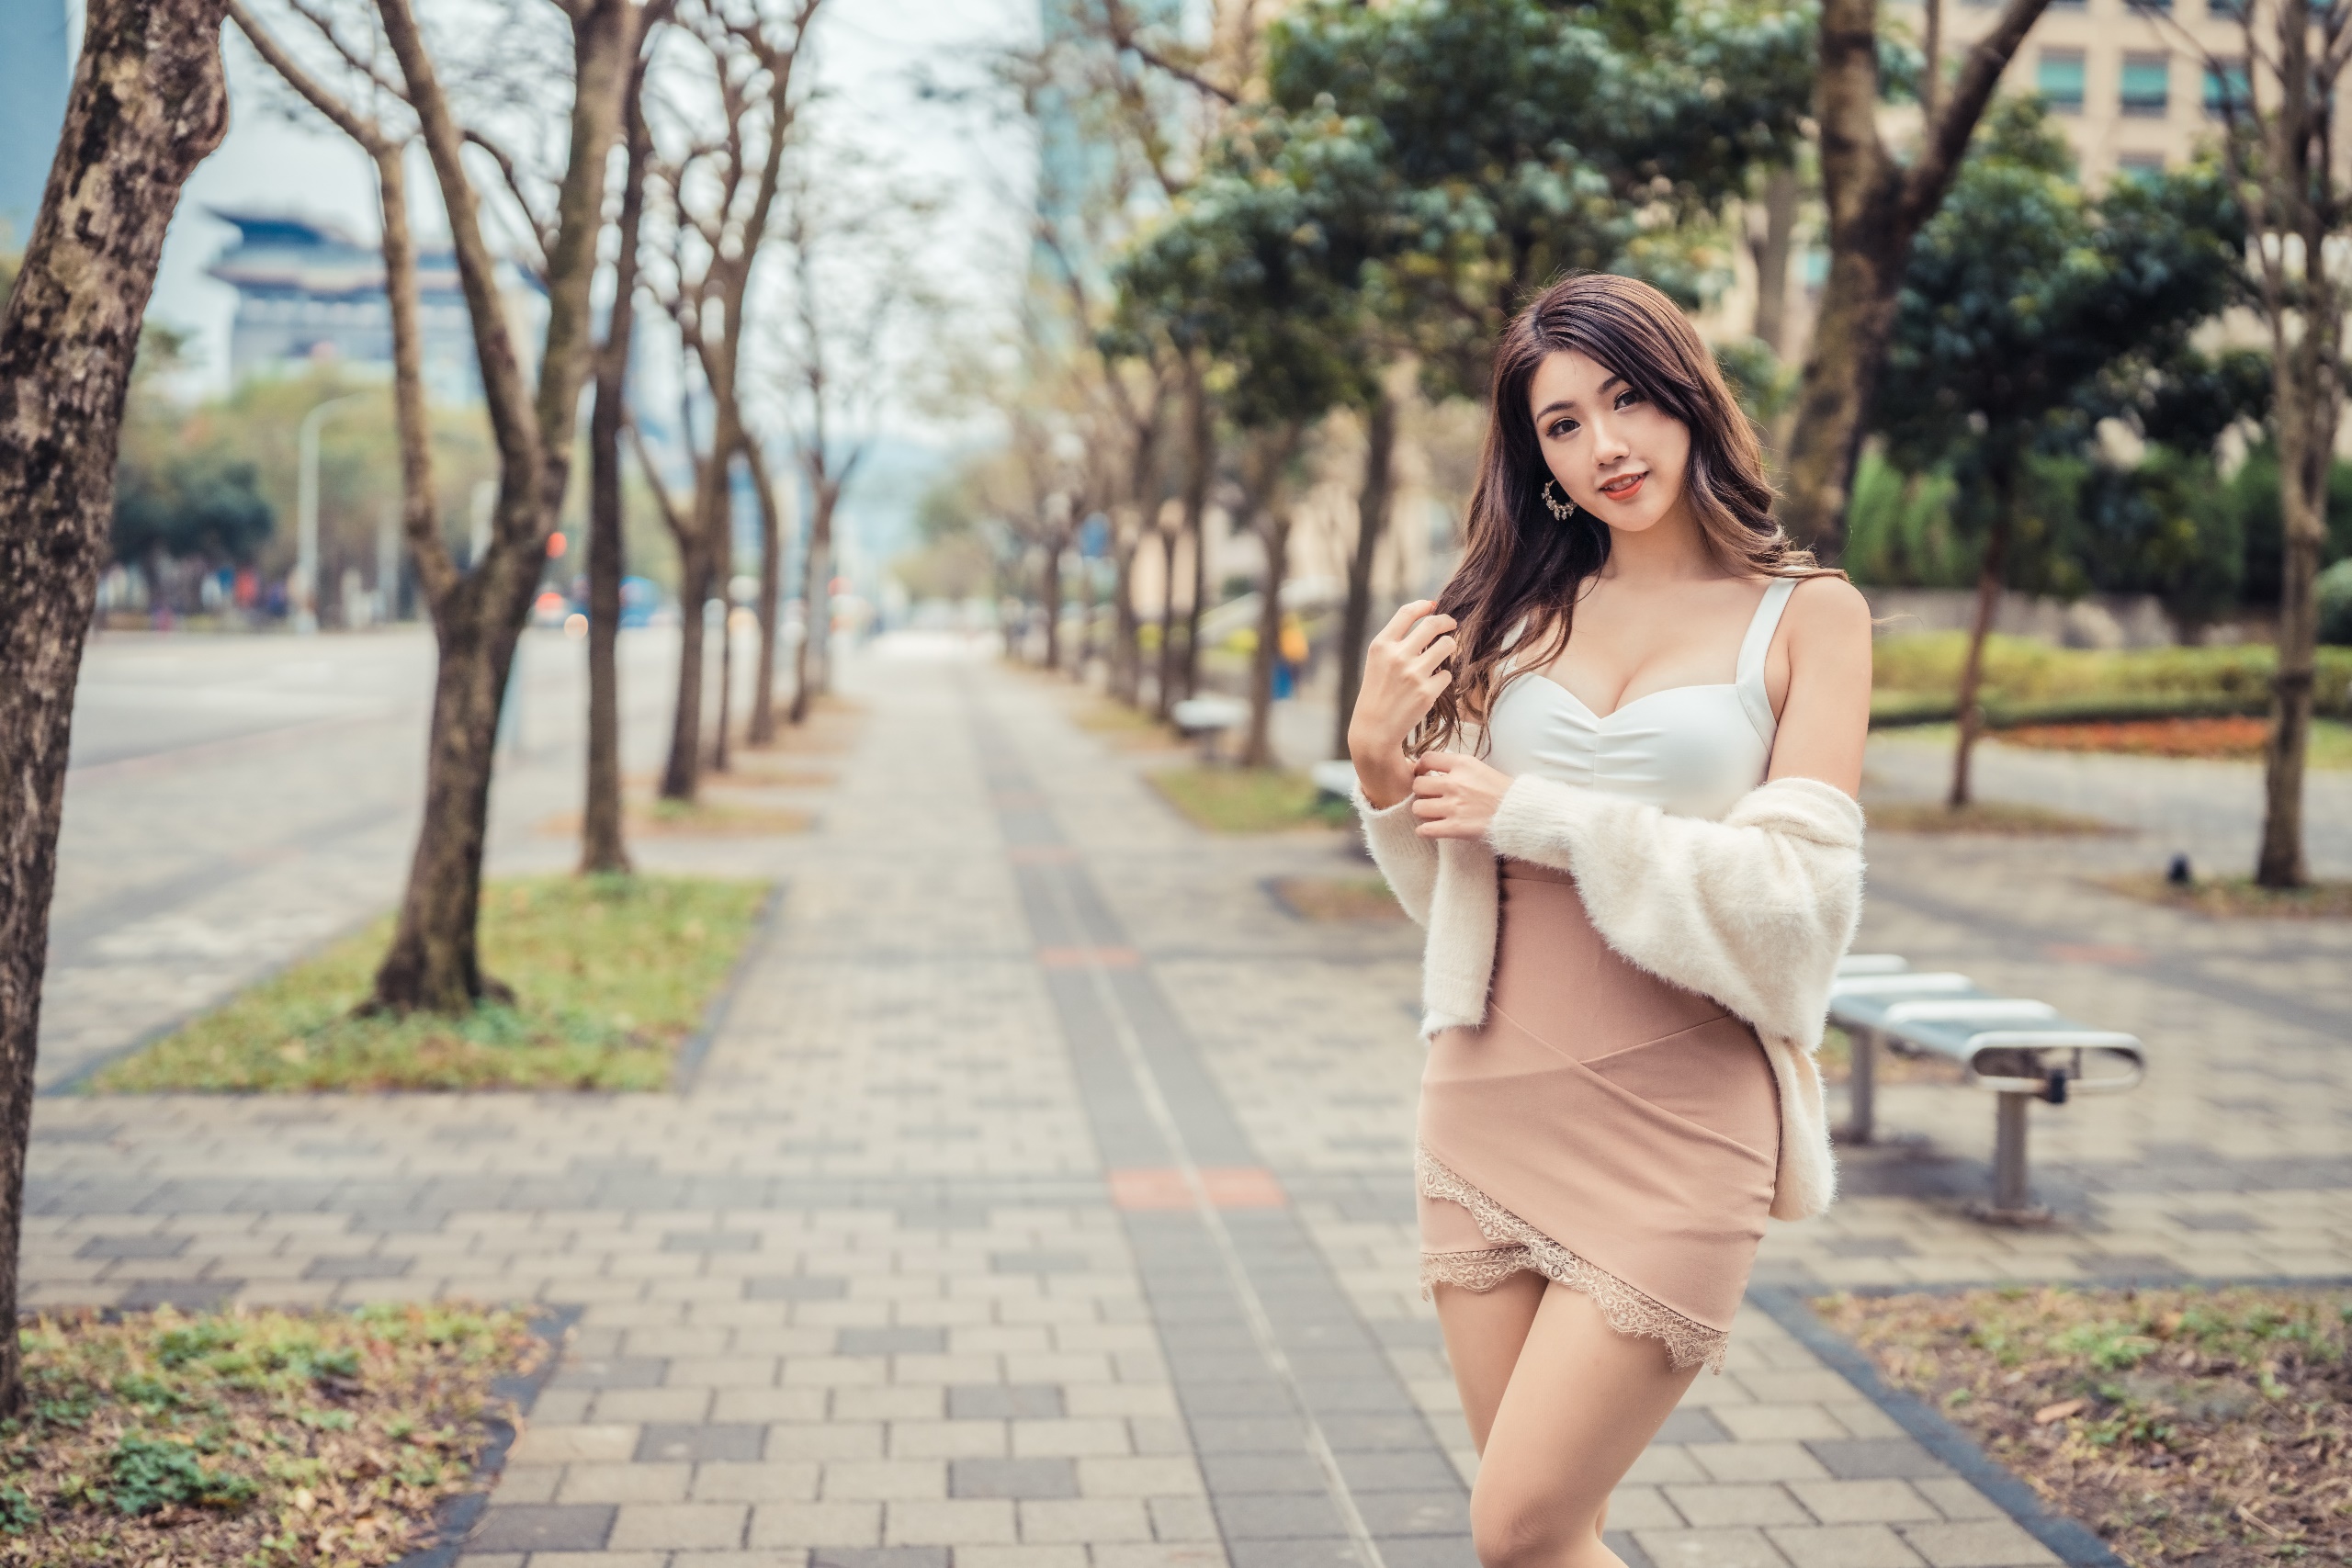 Urban Women Model Asian Women Outdoors Standing Brunette Looking At Viewer Long Hair City 2560x1707